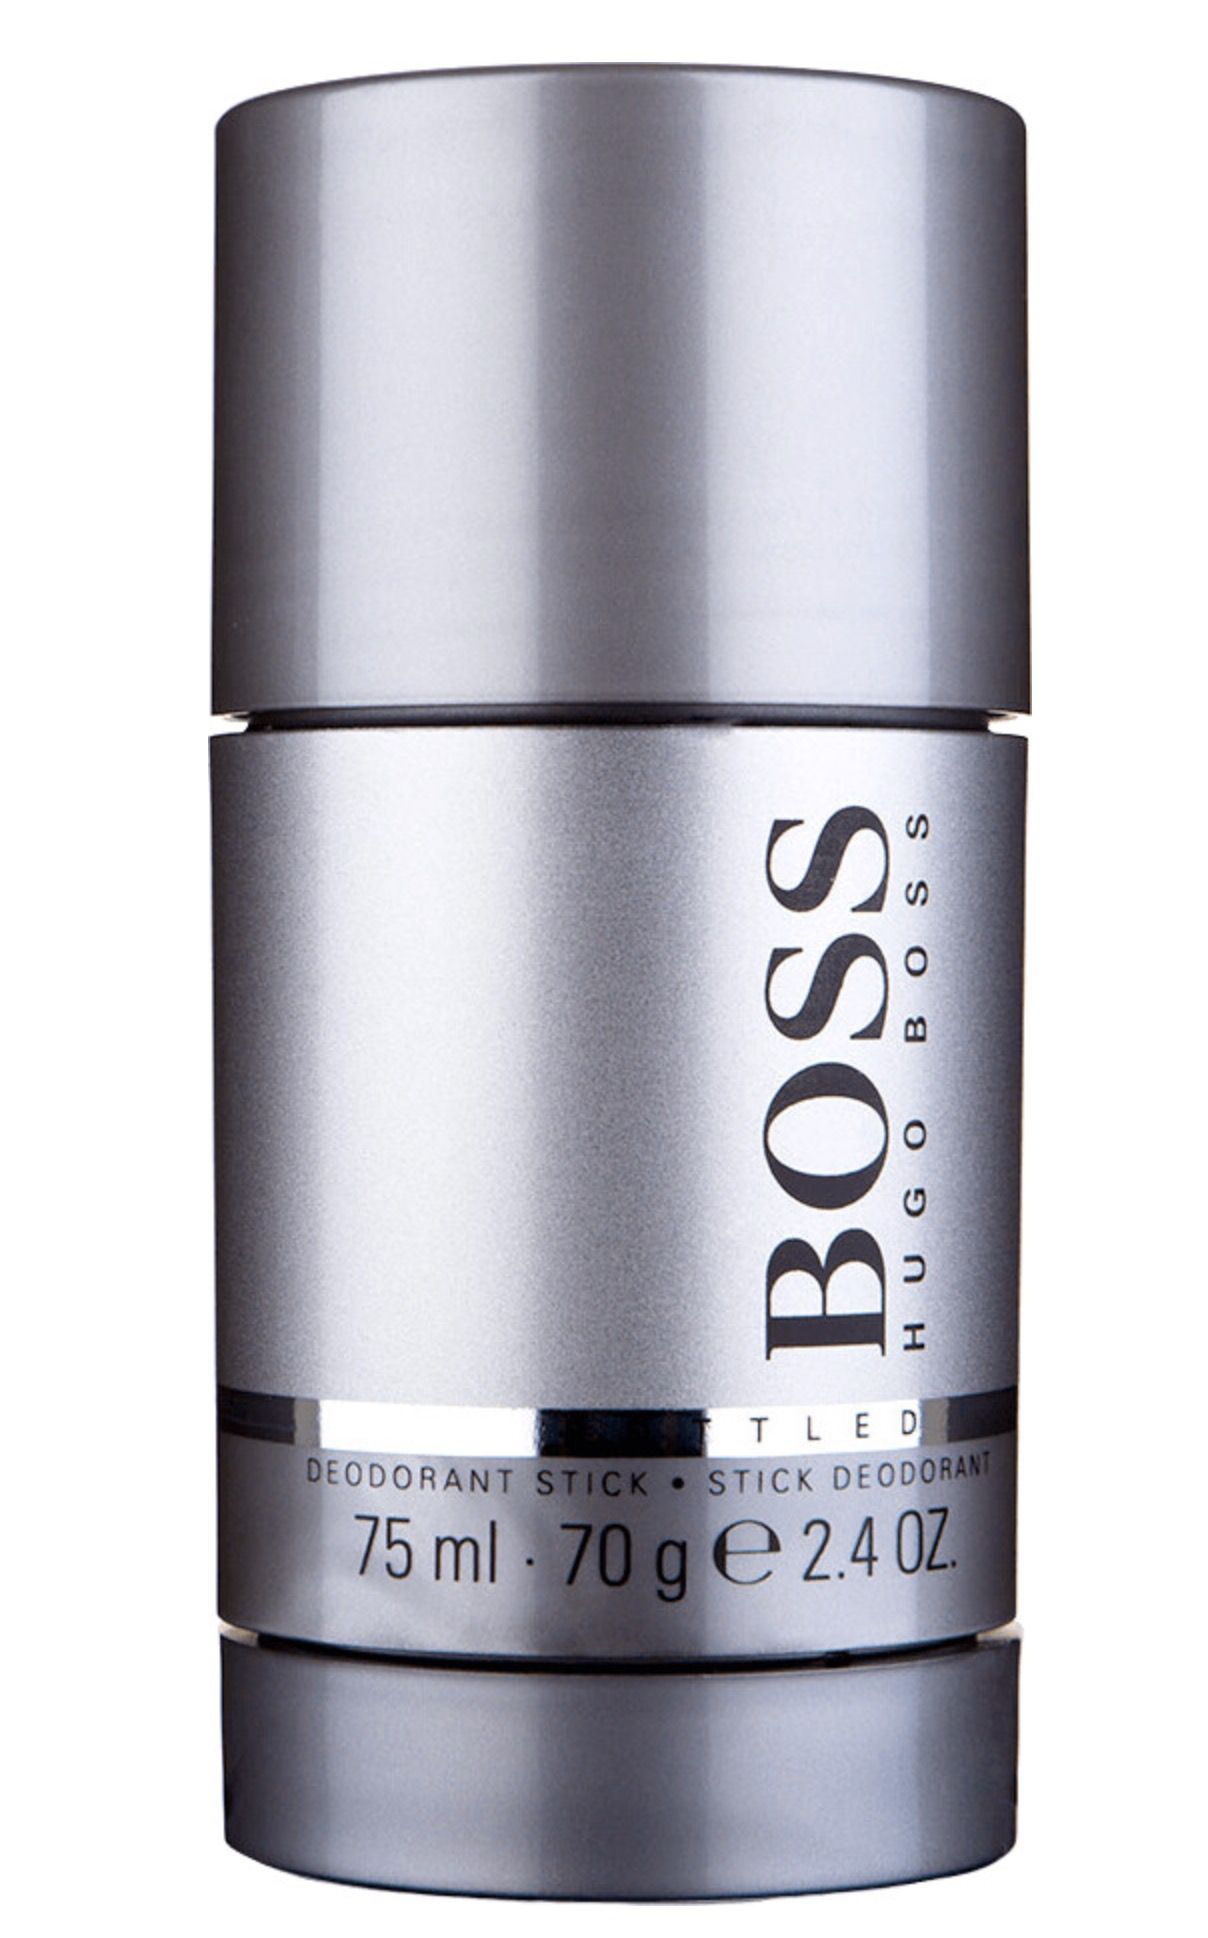 Hugo Boss Bottled EdT 200ml + Deostick 75ml für 62,99€ (statt 77€)